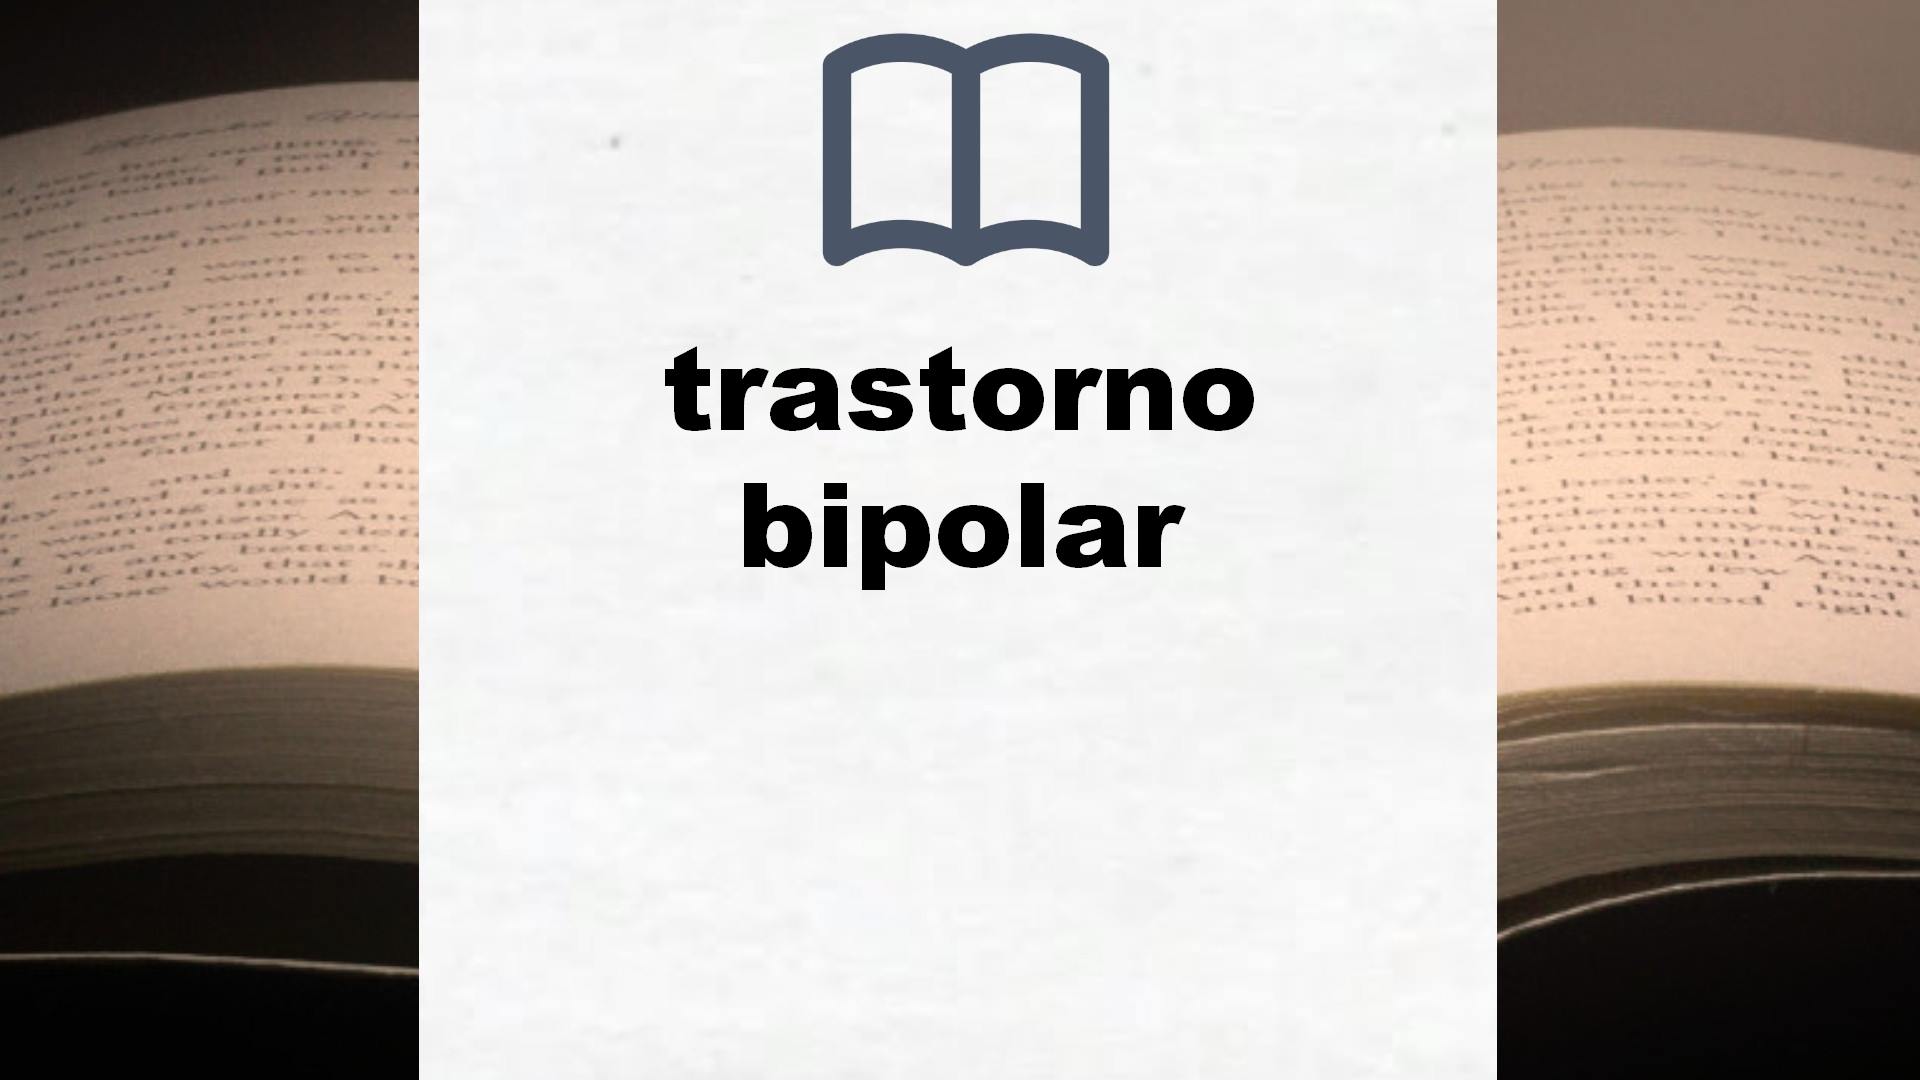 Libros sobre trastorno bipolar